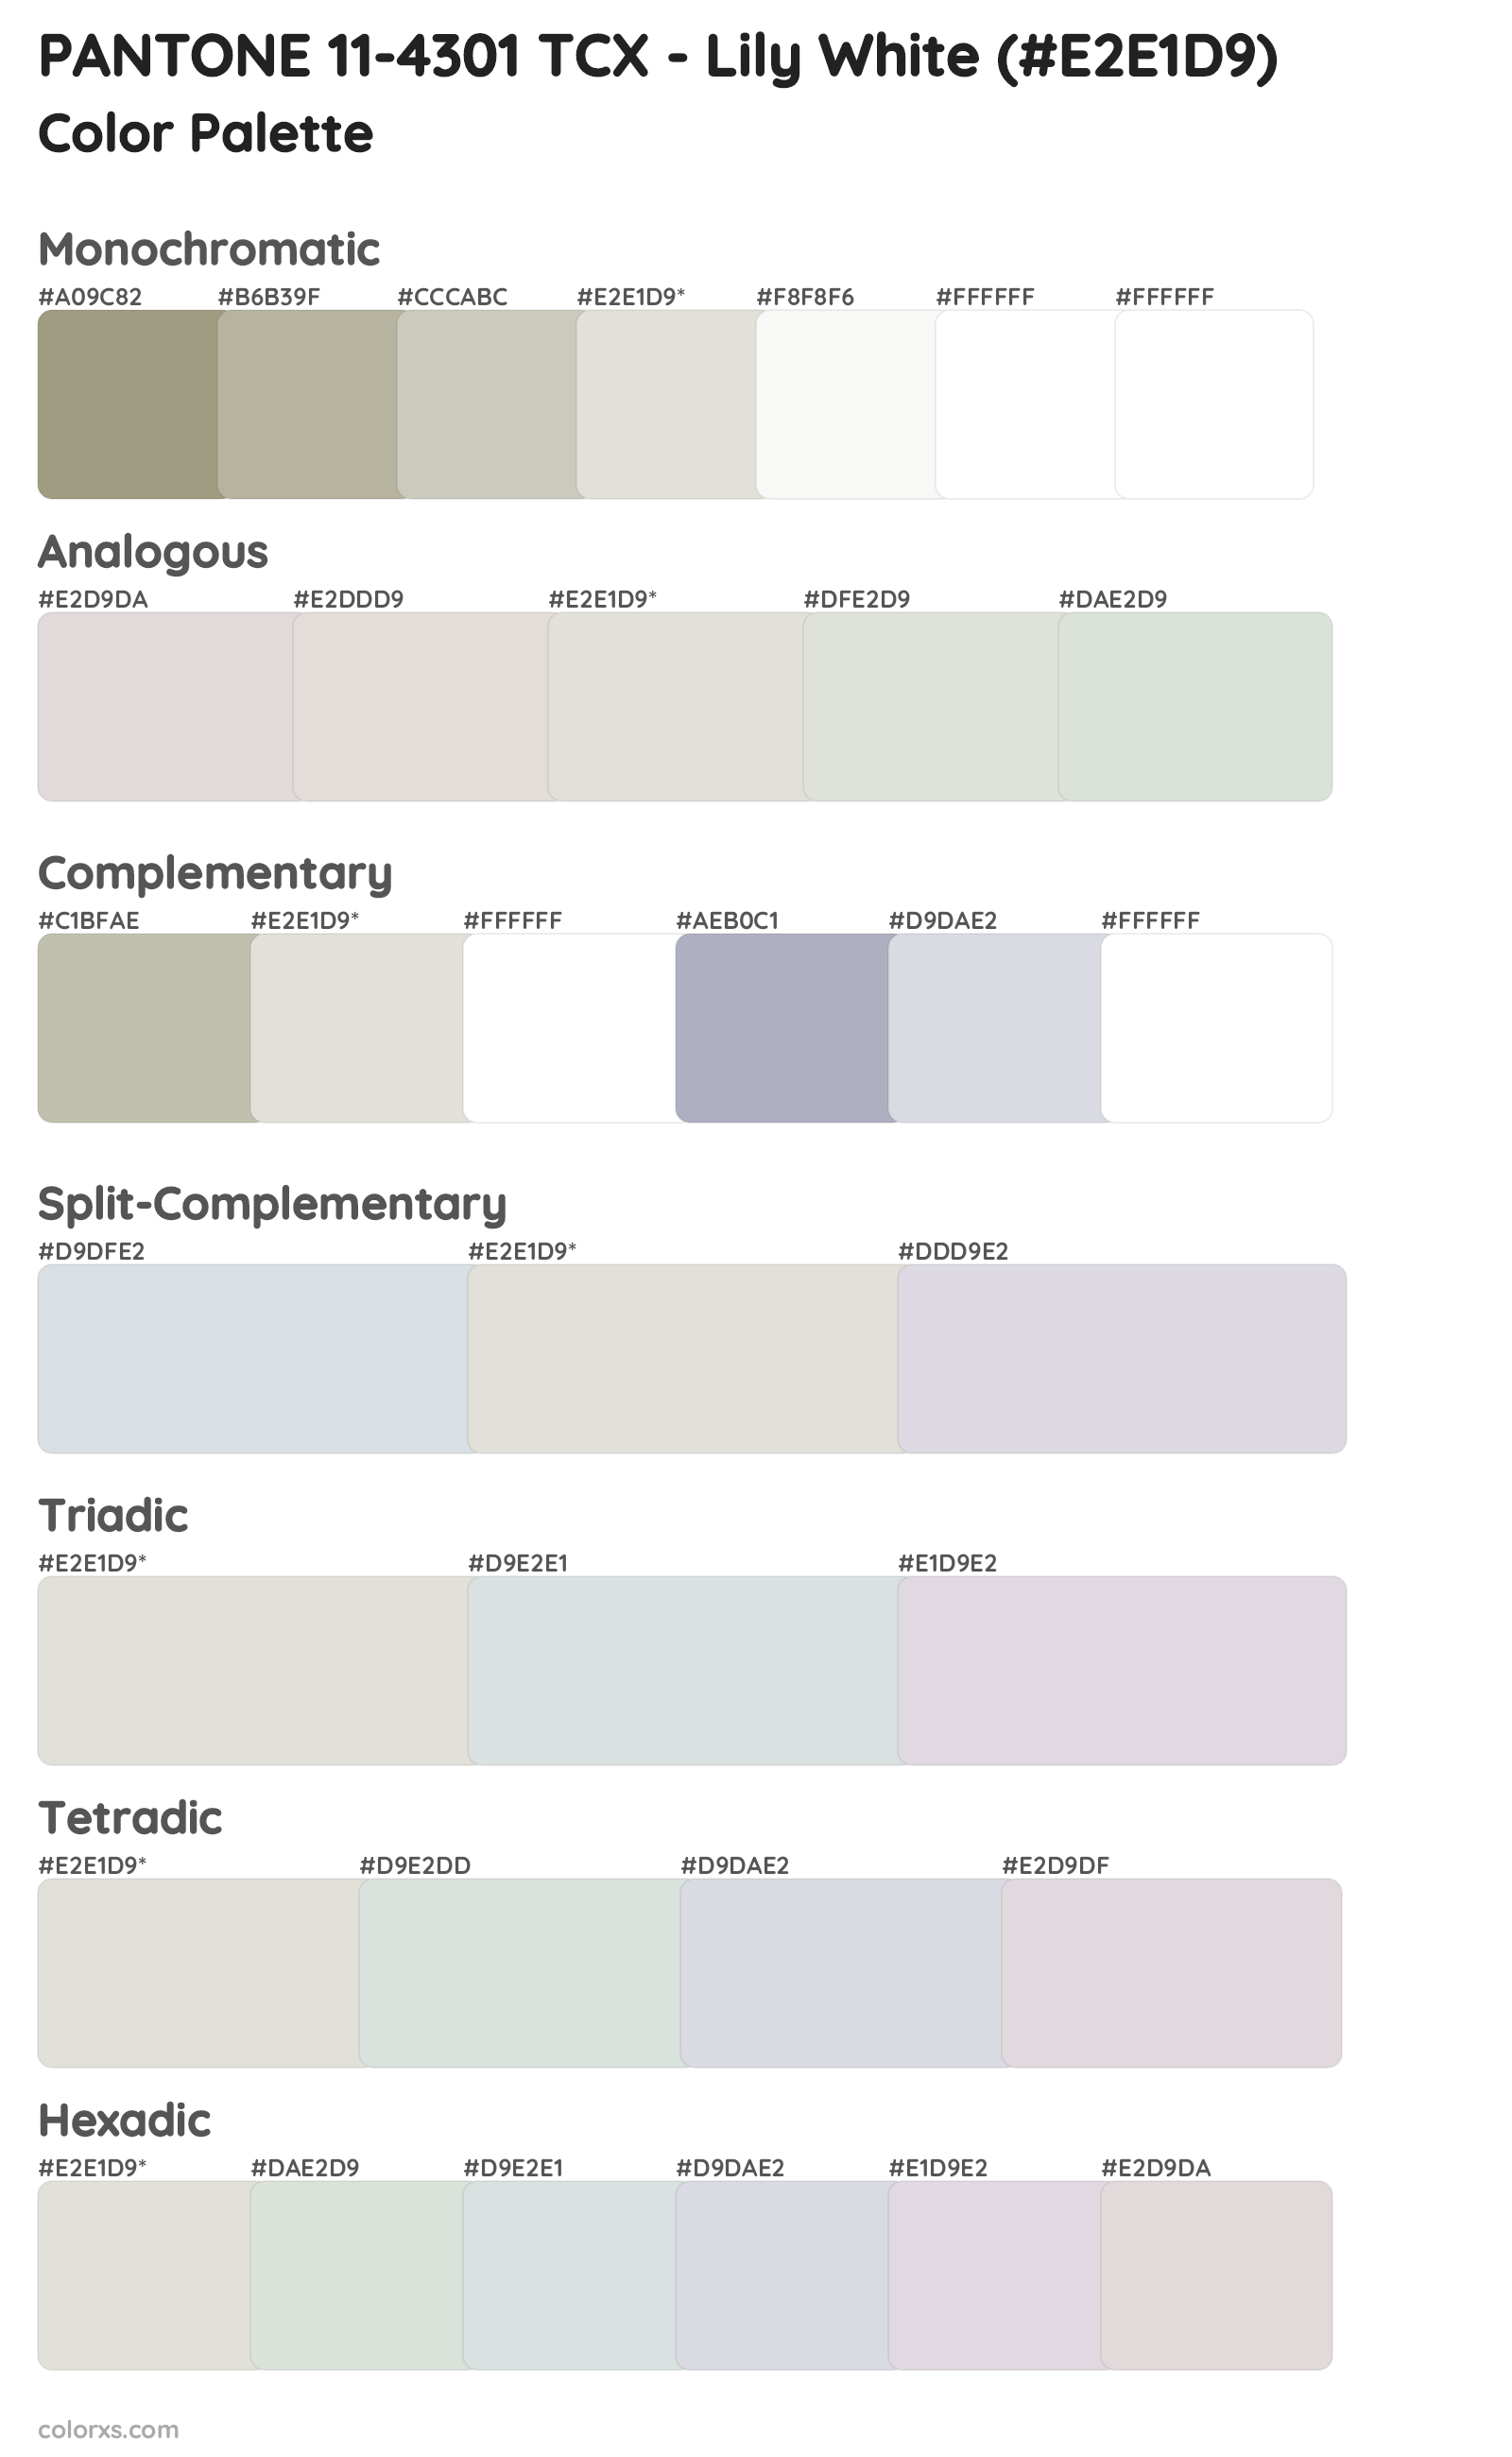 PANTONE 11-4301 TCX - Lily White Color Scheme Palettes